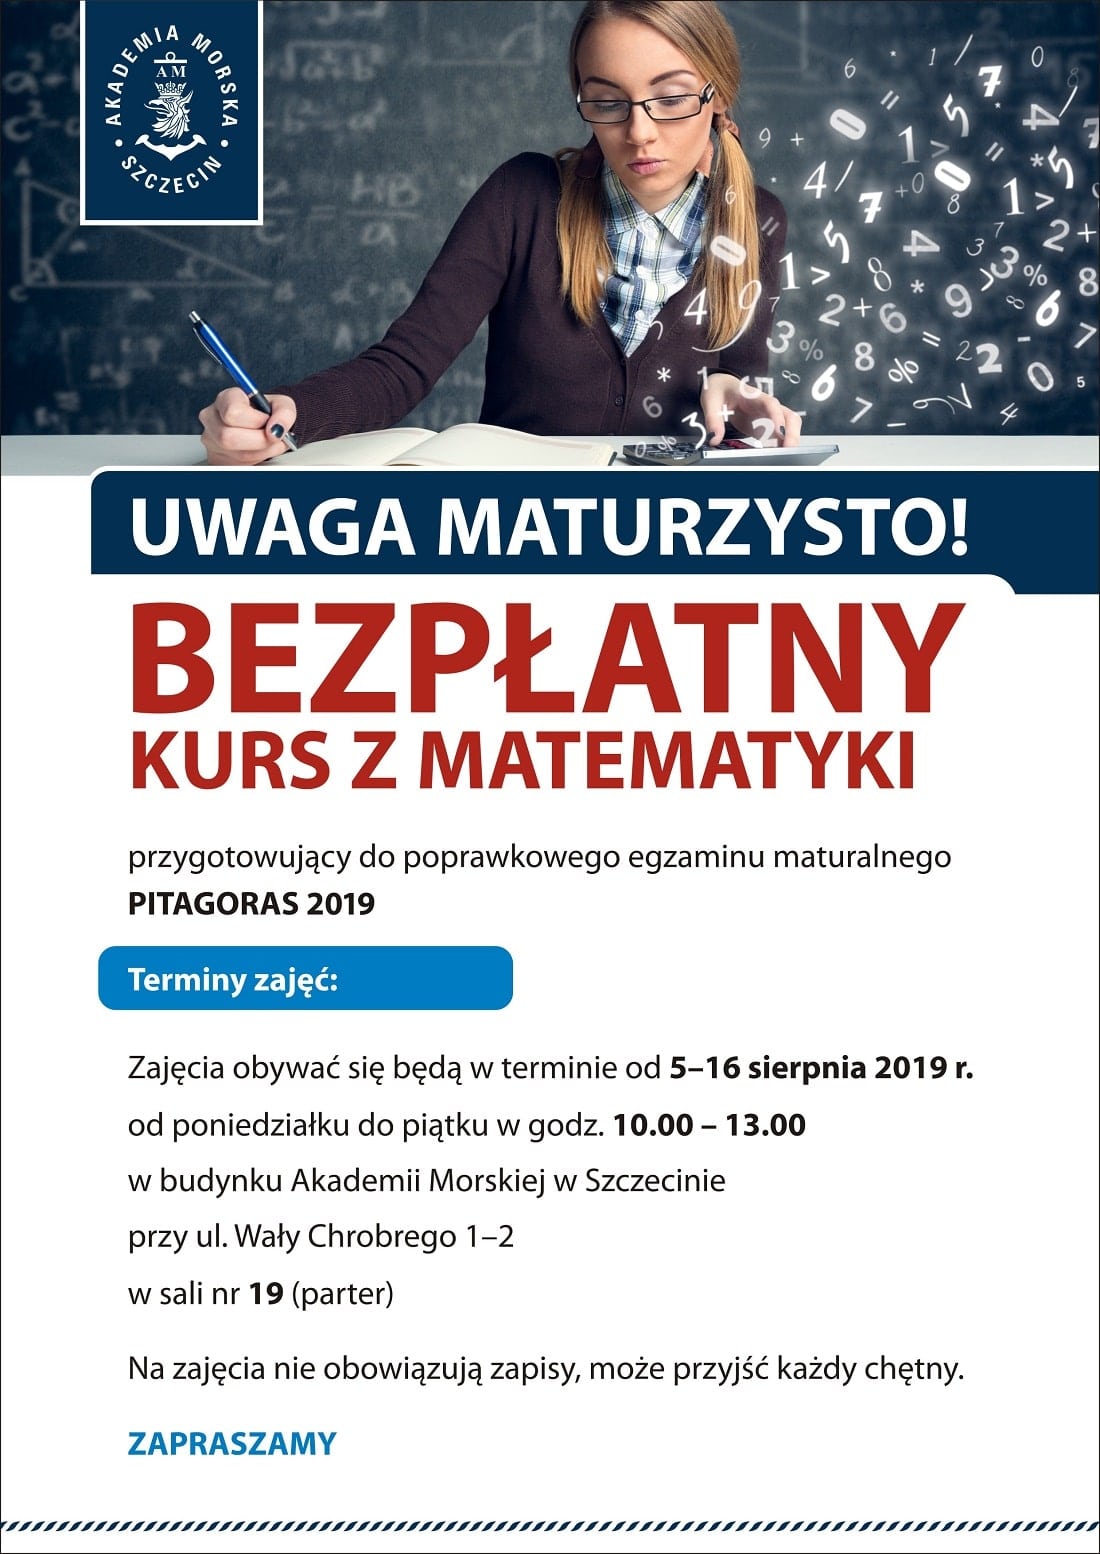 Plakat Pitagoras poprawkowy 2019